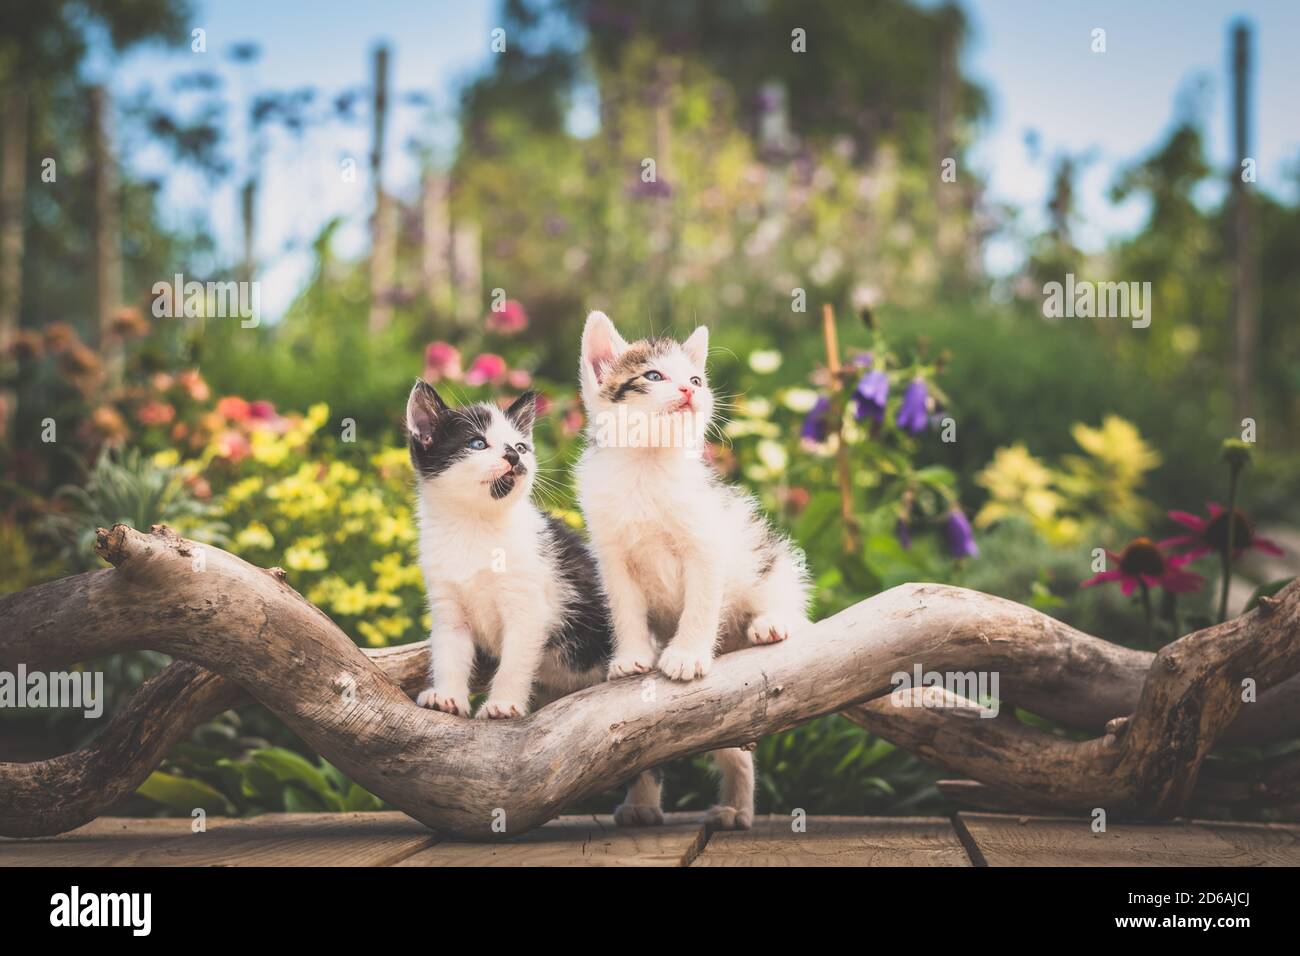 Zwei entzückende niedliche Kätzchen posiert auf Baumstamm in bunten gelben, roten, grünen Blumen Hintergrund Stockfoto